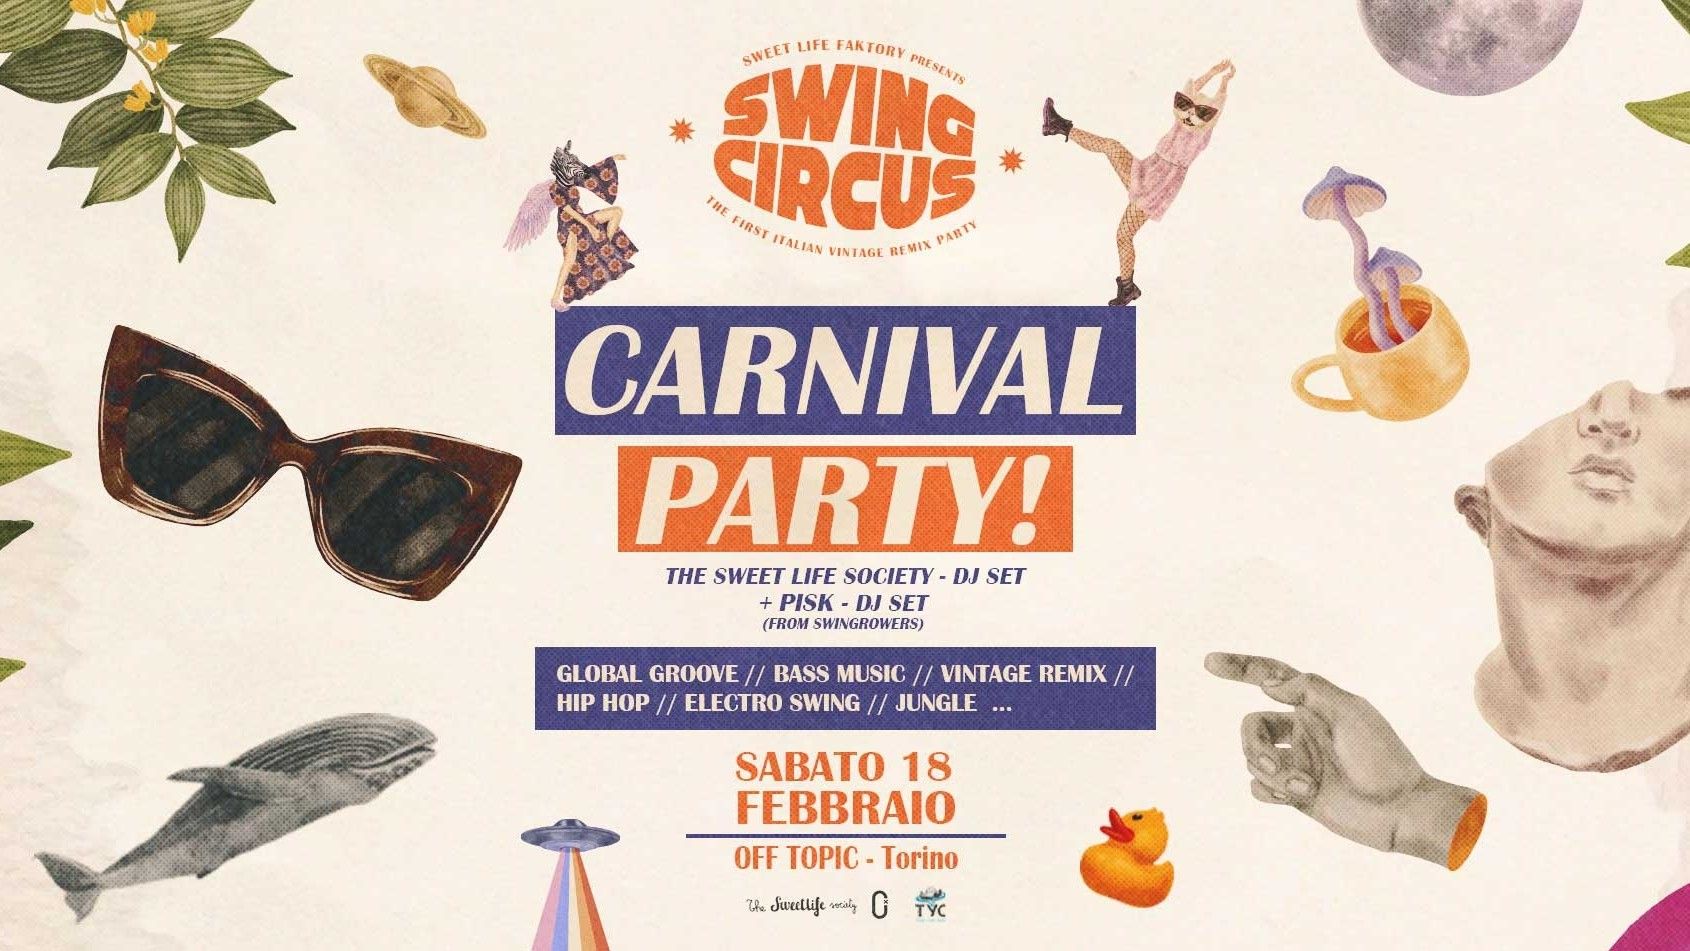 Swing Circus Carnival Party! Il Festone Di Carnevale!!